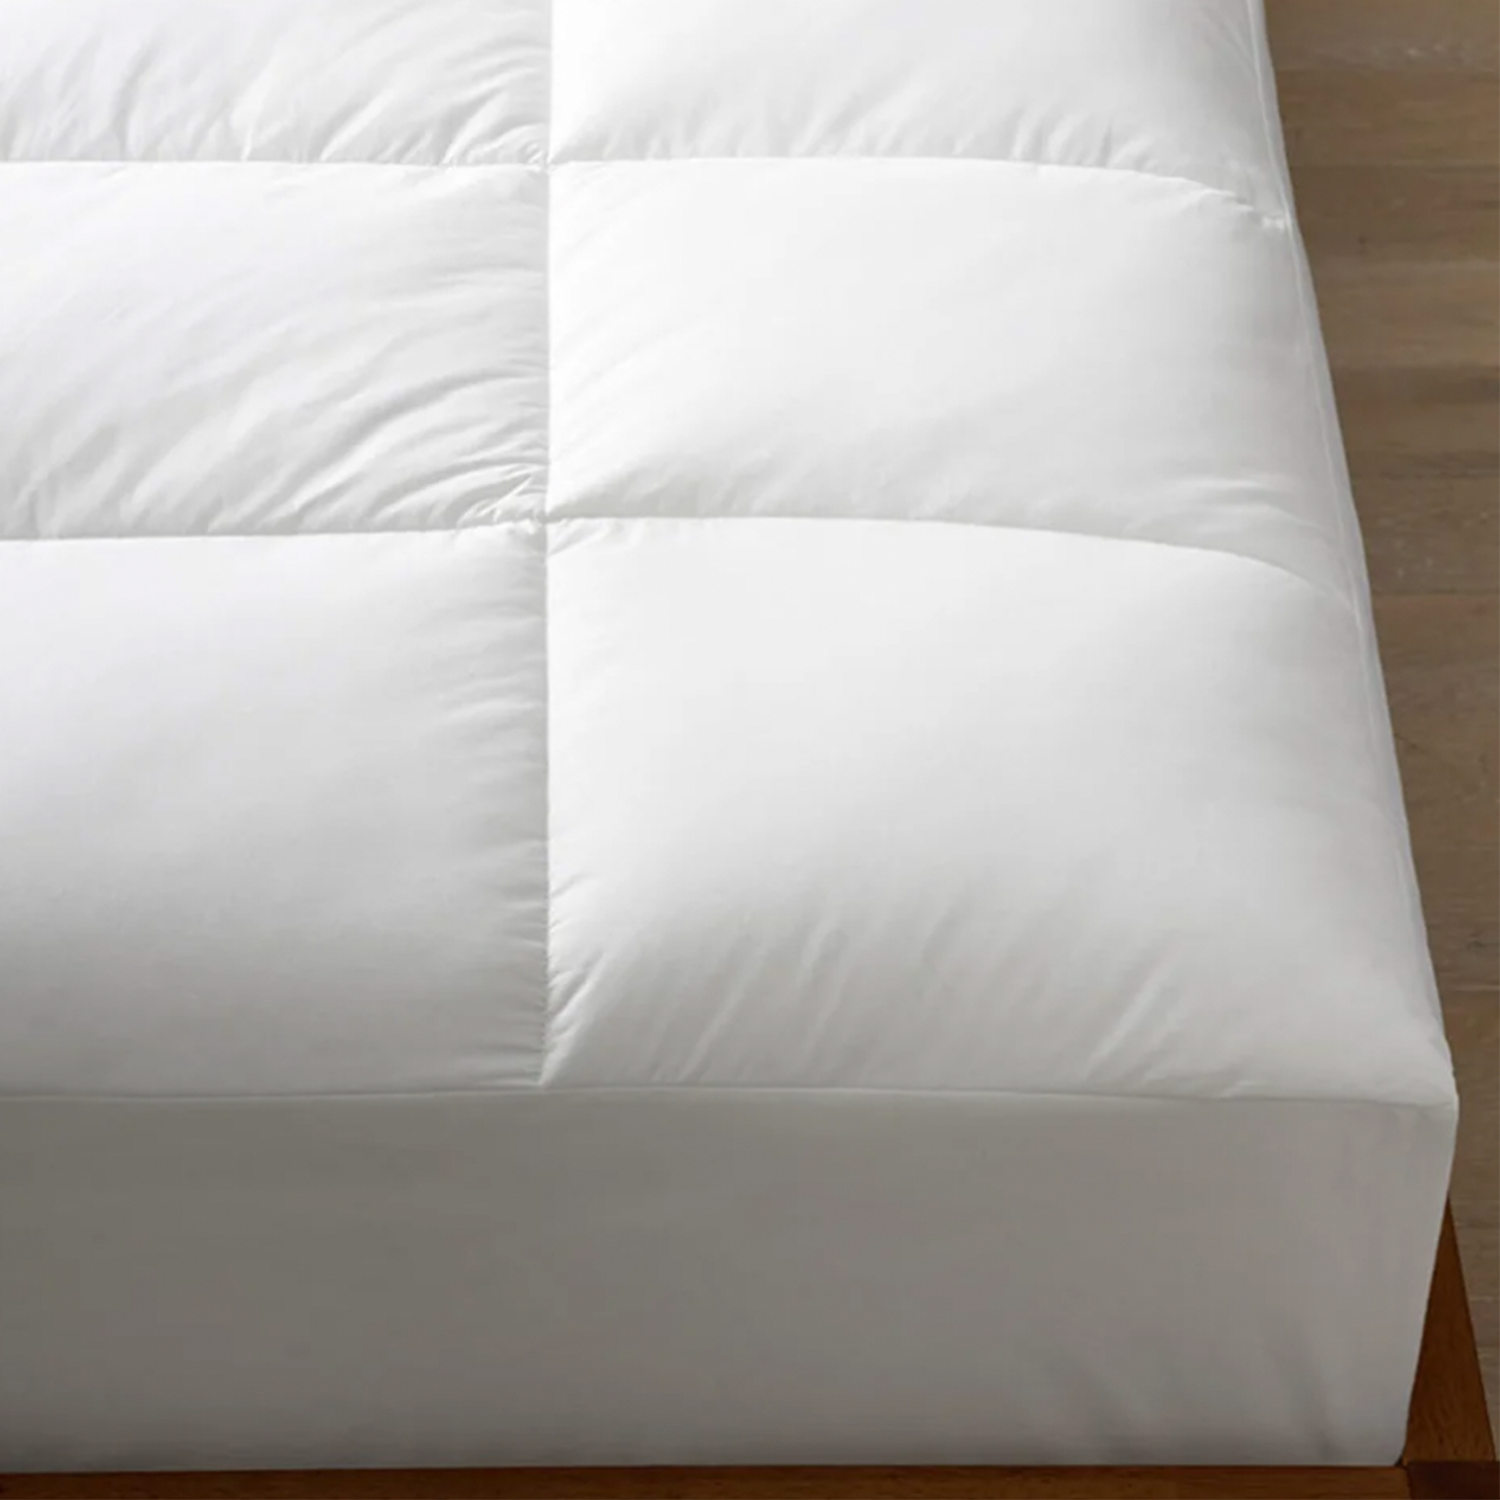 company store mattress pad